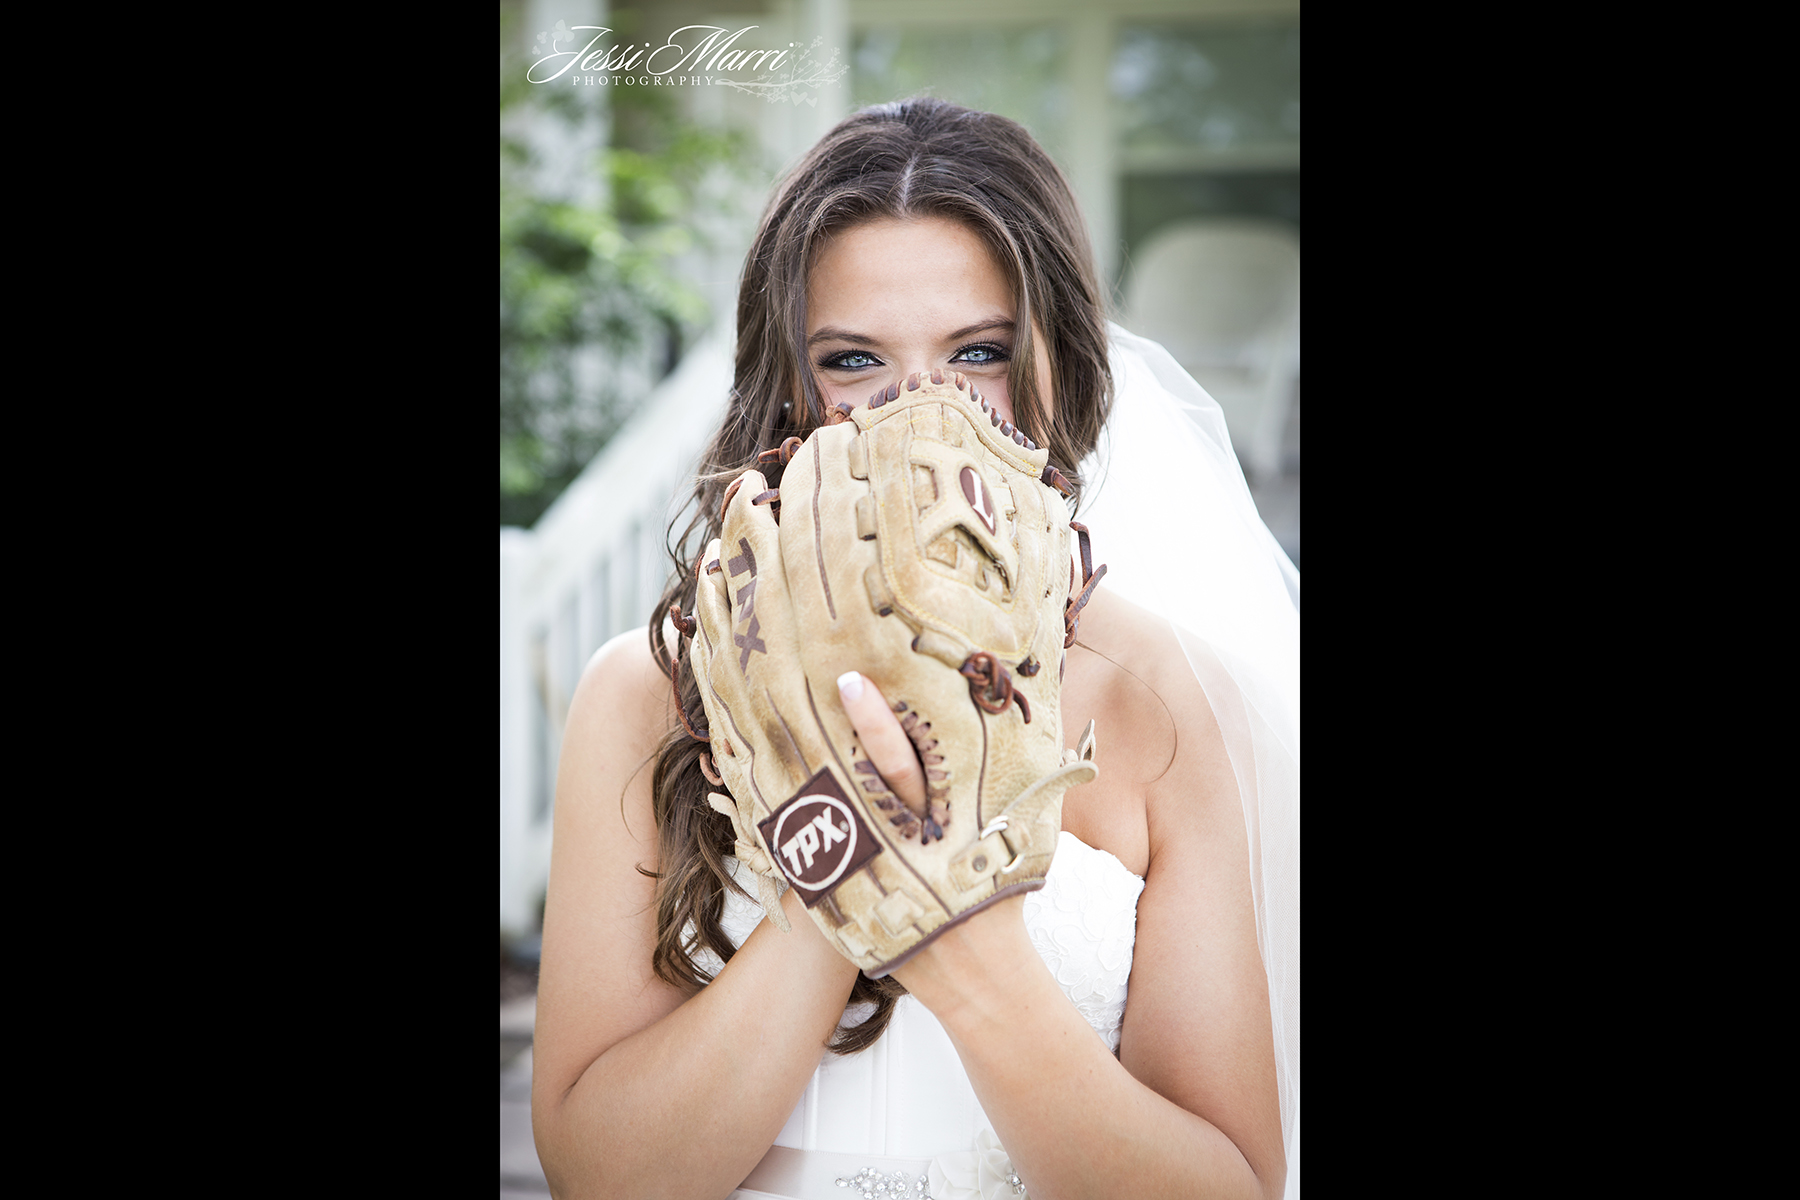 Baseball Bride